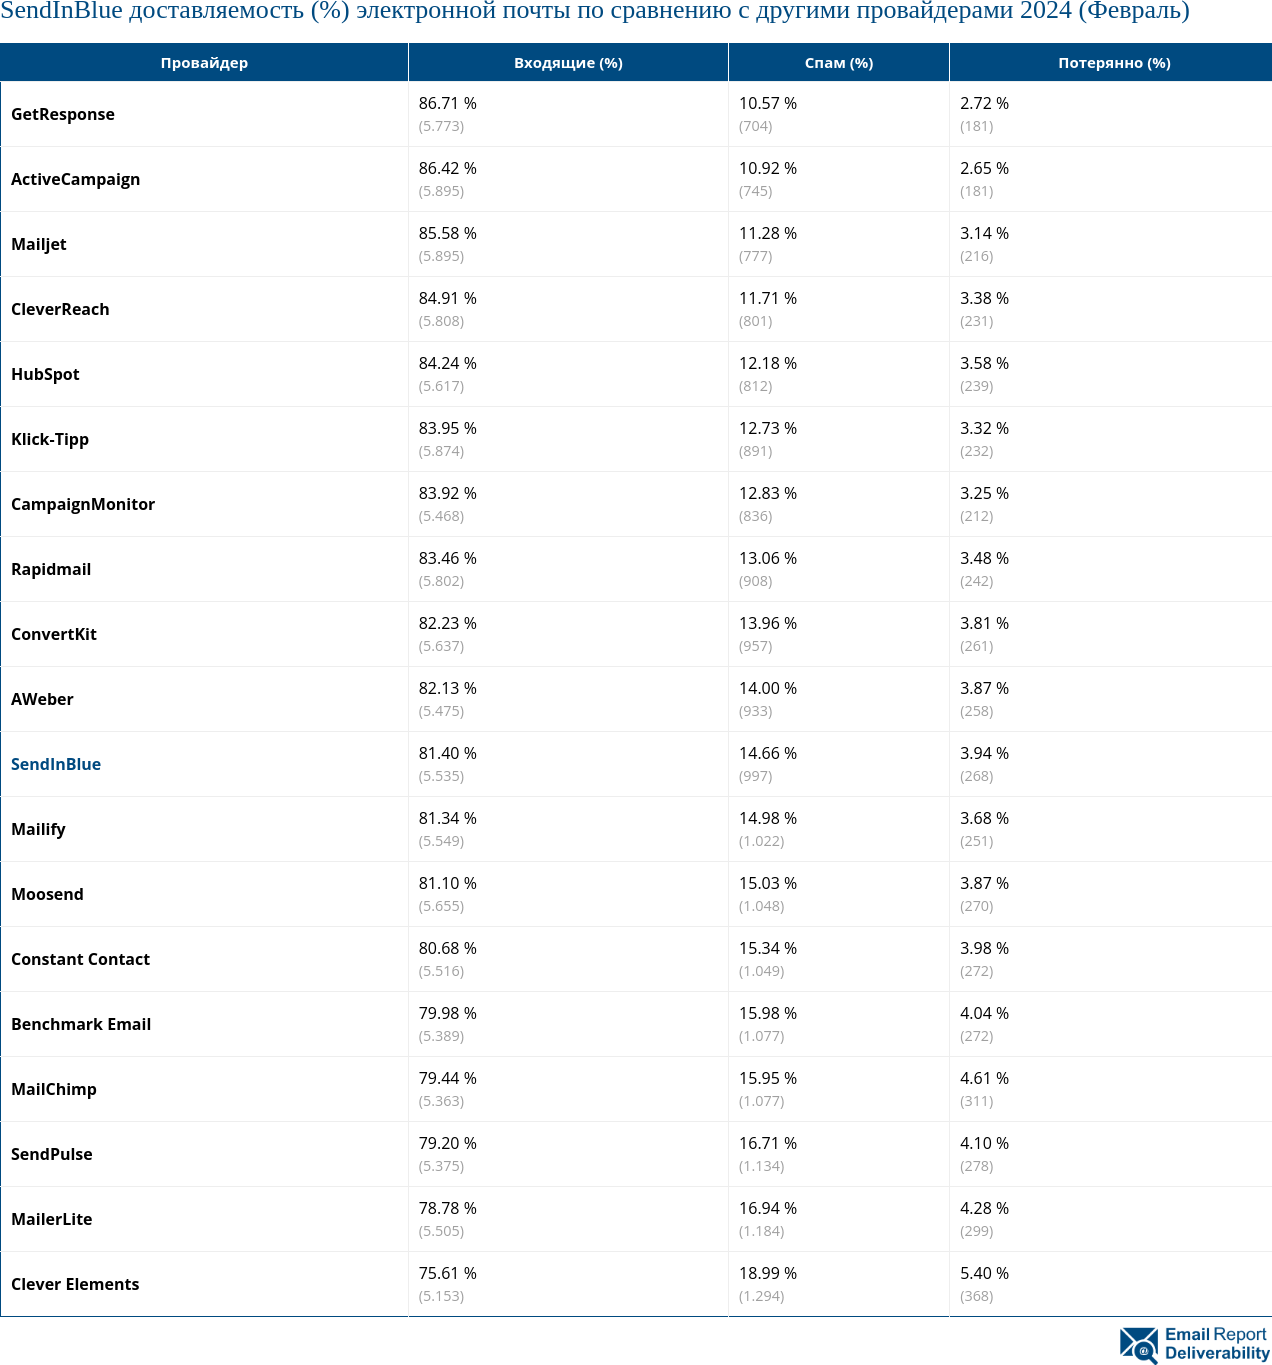 SendInBlue доставляемость (%) электронной почты по сравнению с другими провайдерами 2024 (Февраль)